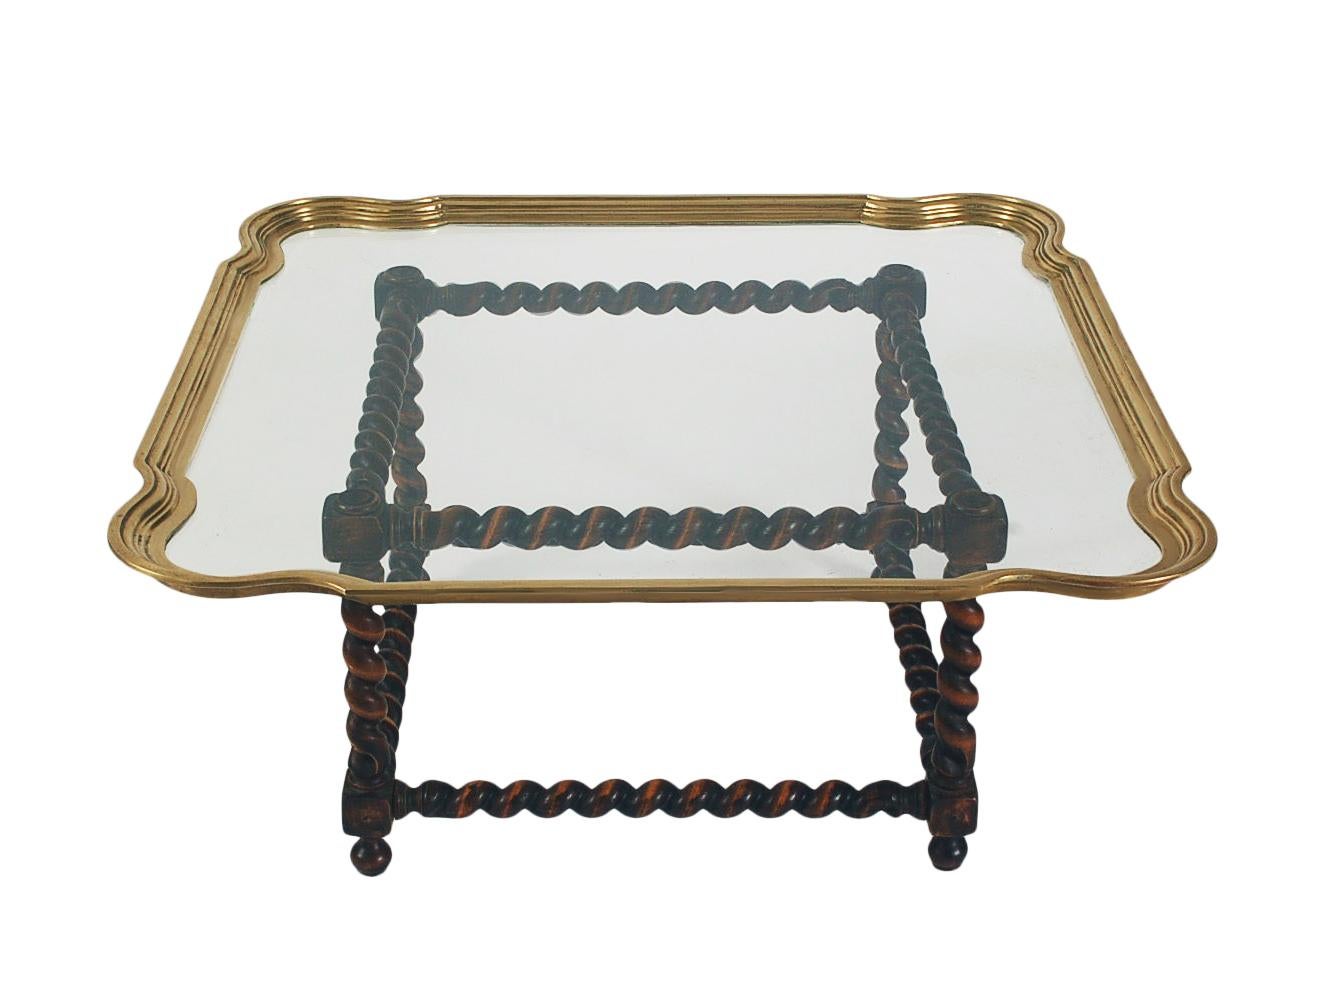 Table basse classique de style transitionnel, datant des années 1970. Elle se compose d'une base épaisse en bois massif et d'un plateau en verre transparent et en laiton.